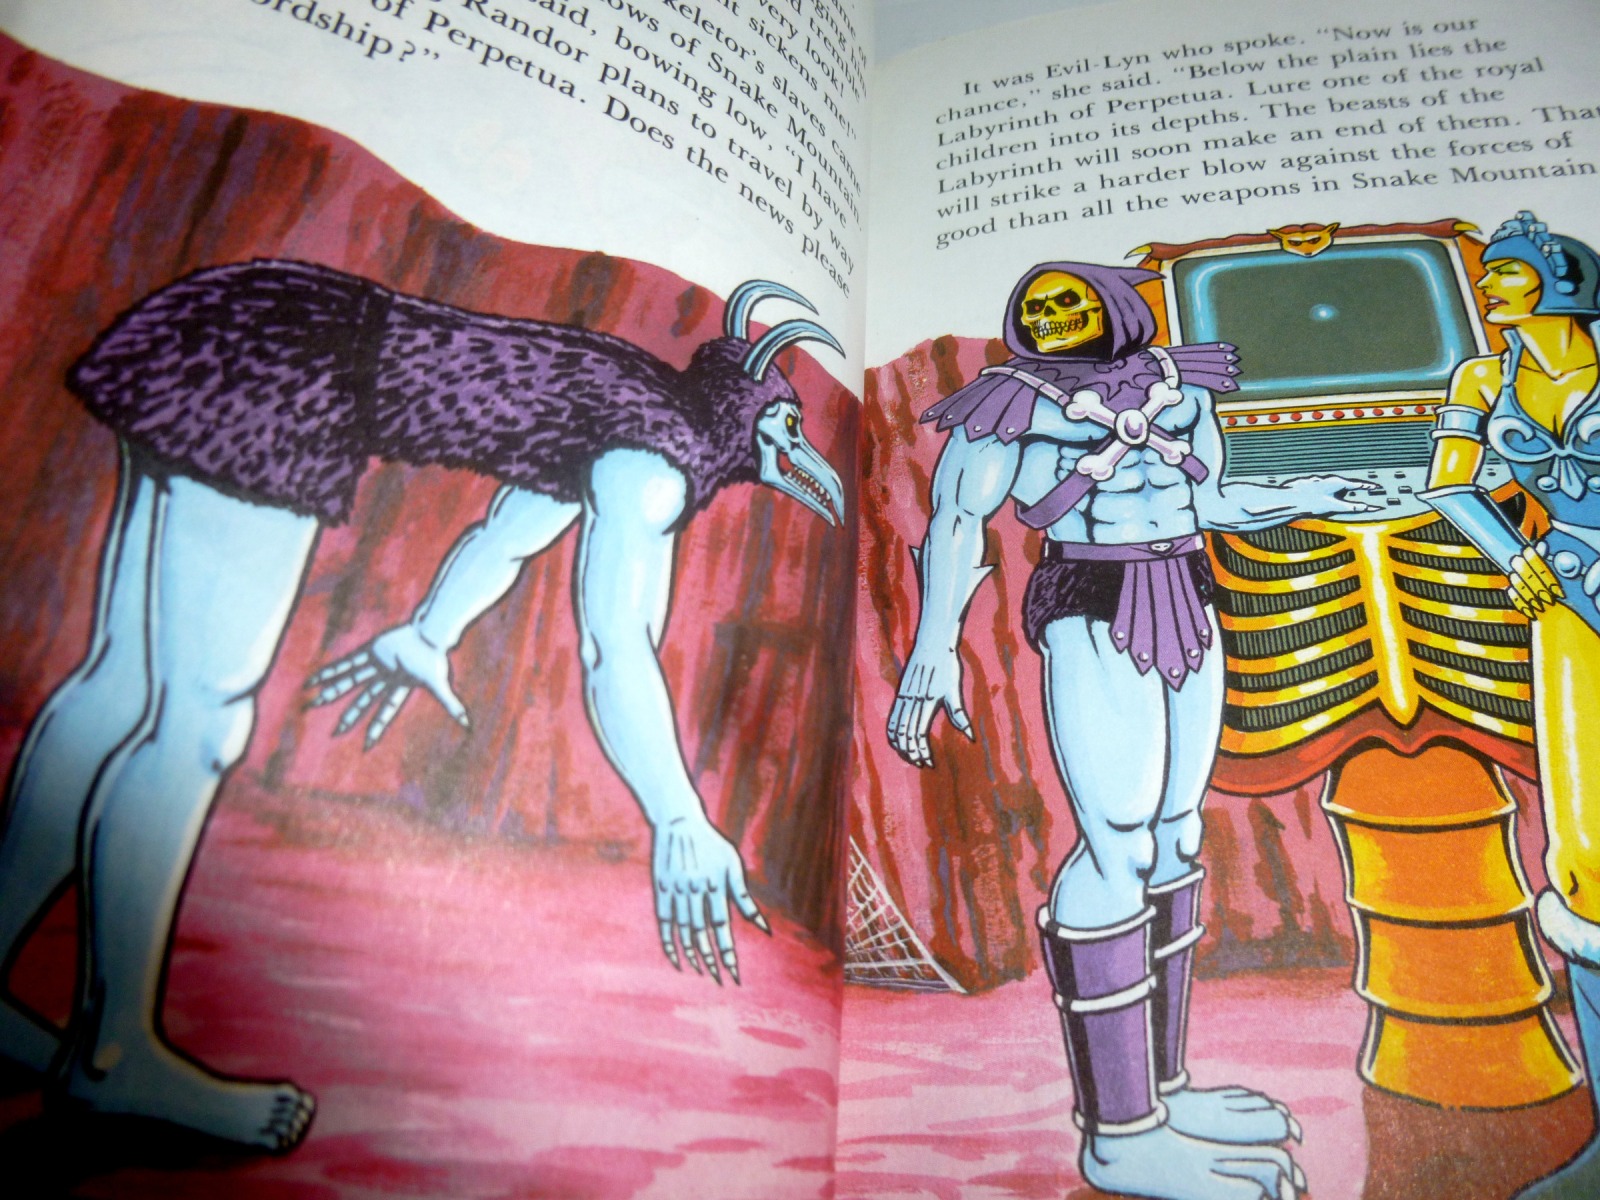 He-Man meets the Beast Ladybird Books LTD 2